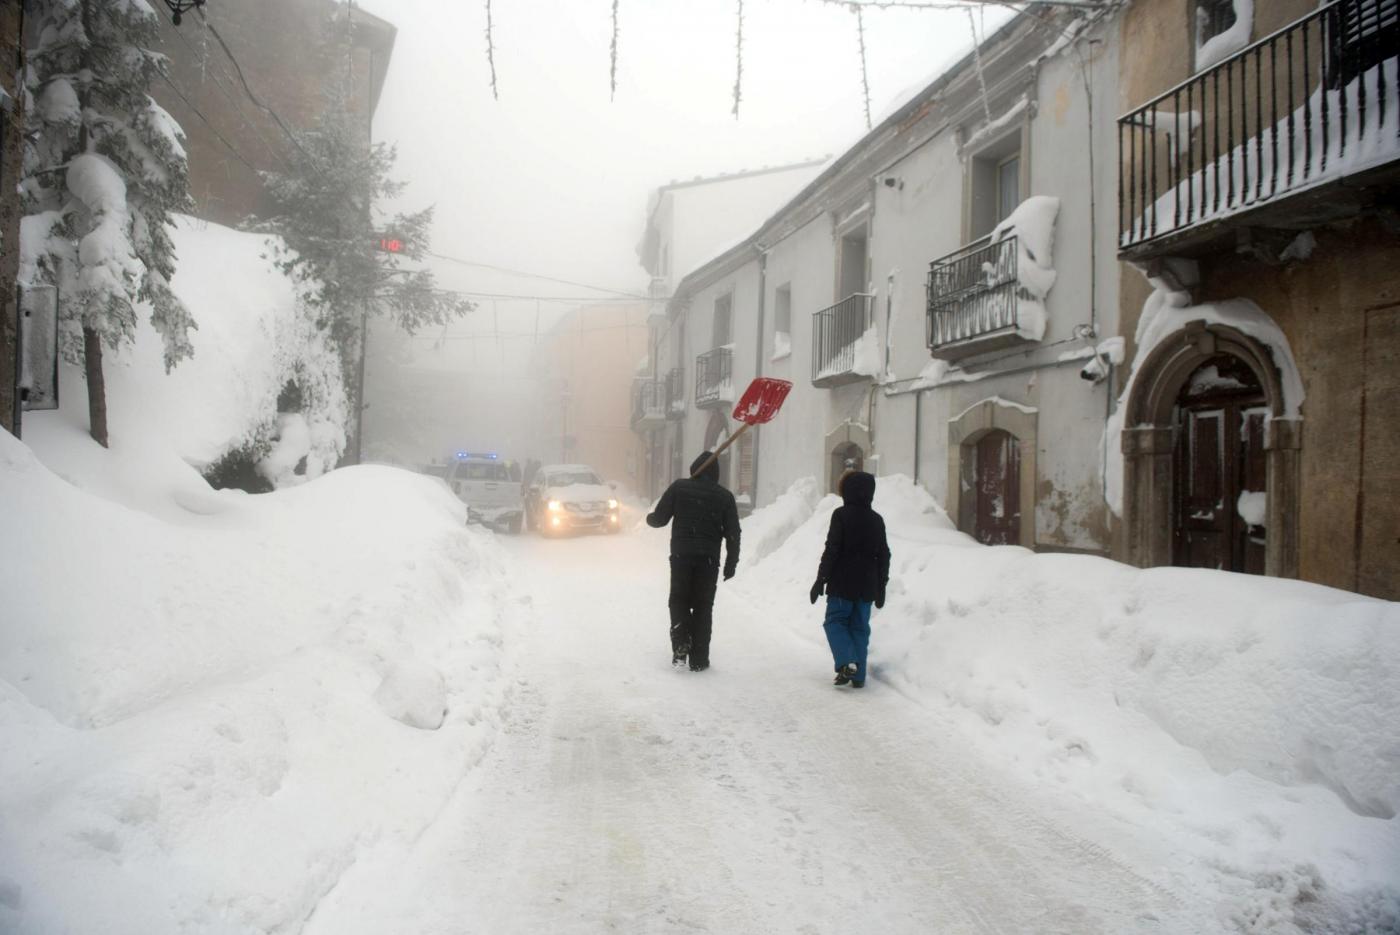 Maltempo in Abruzzo, emergenza per gelo e neve